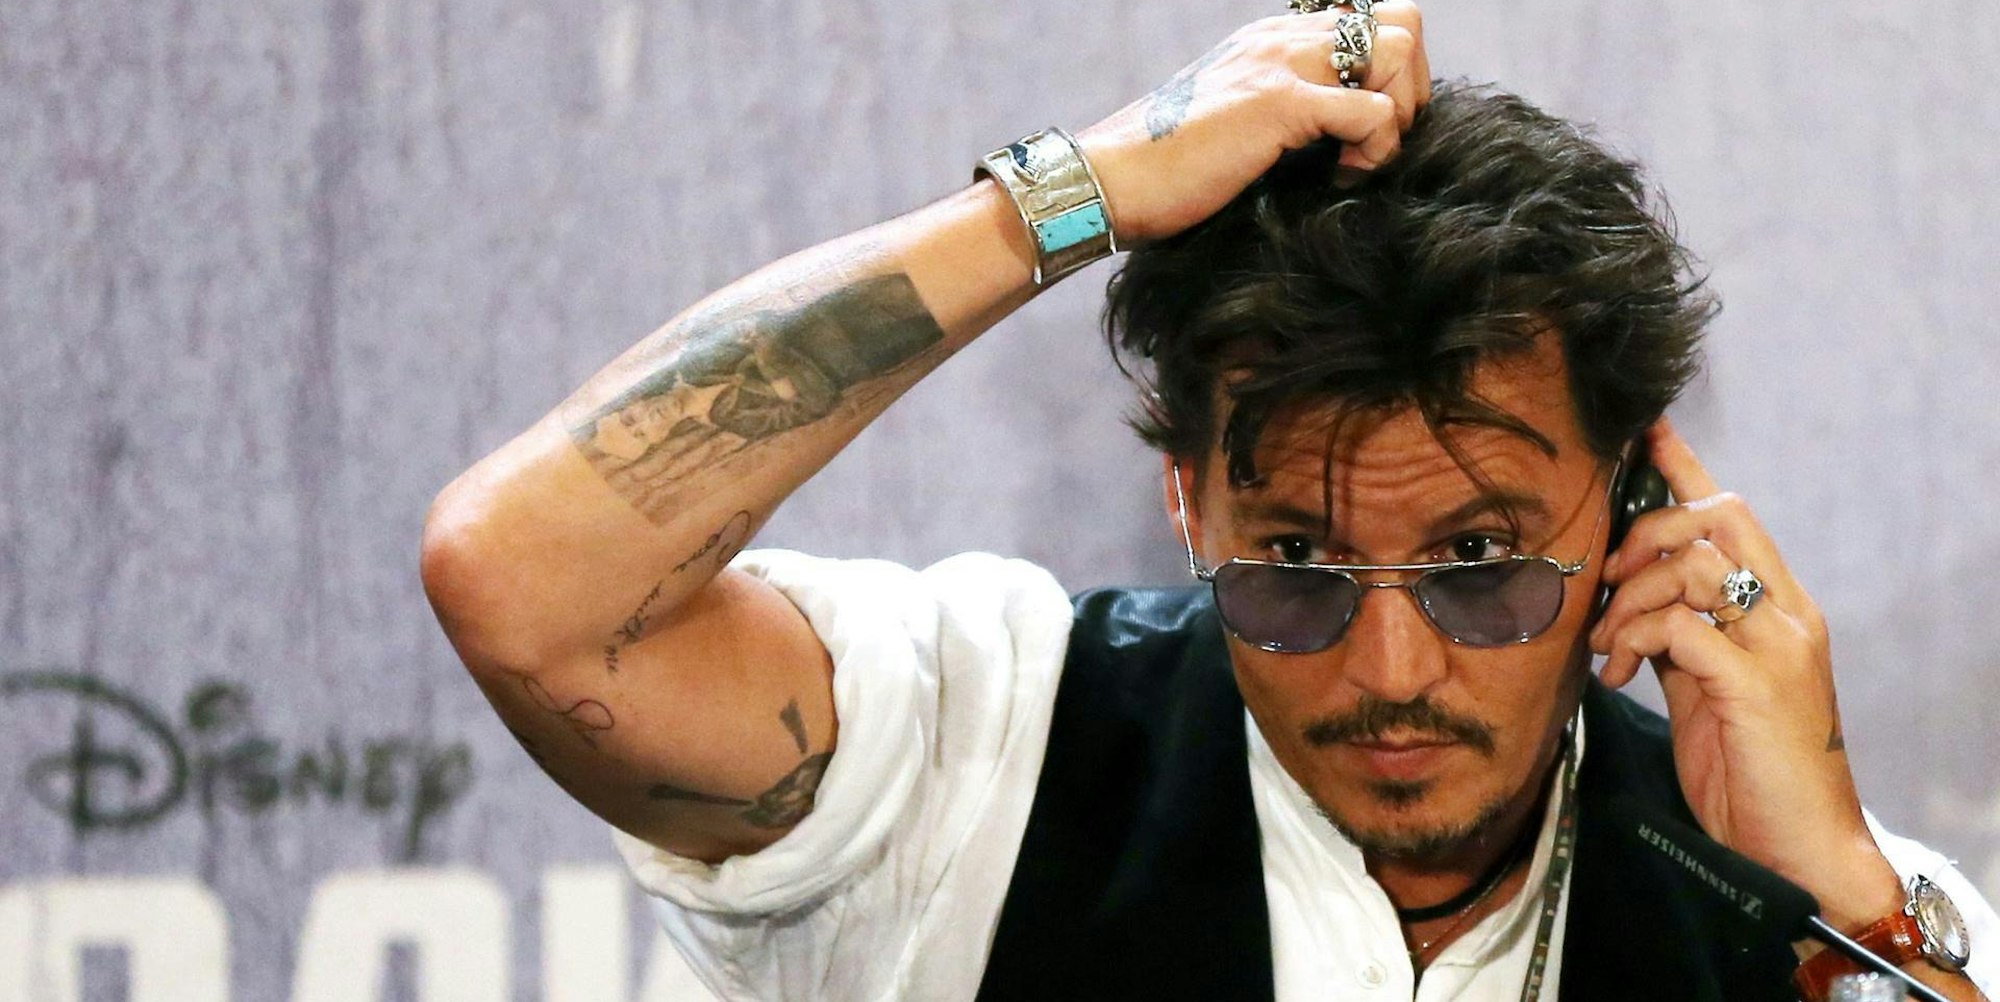 Johnny Depp kratzt Kopf